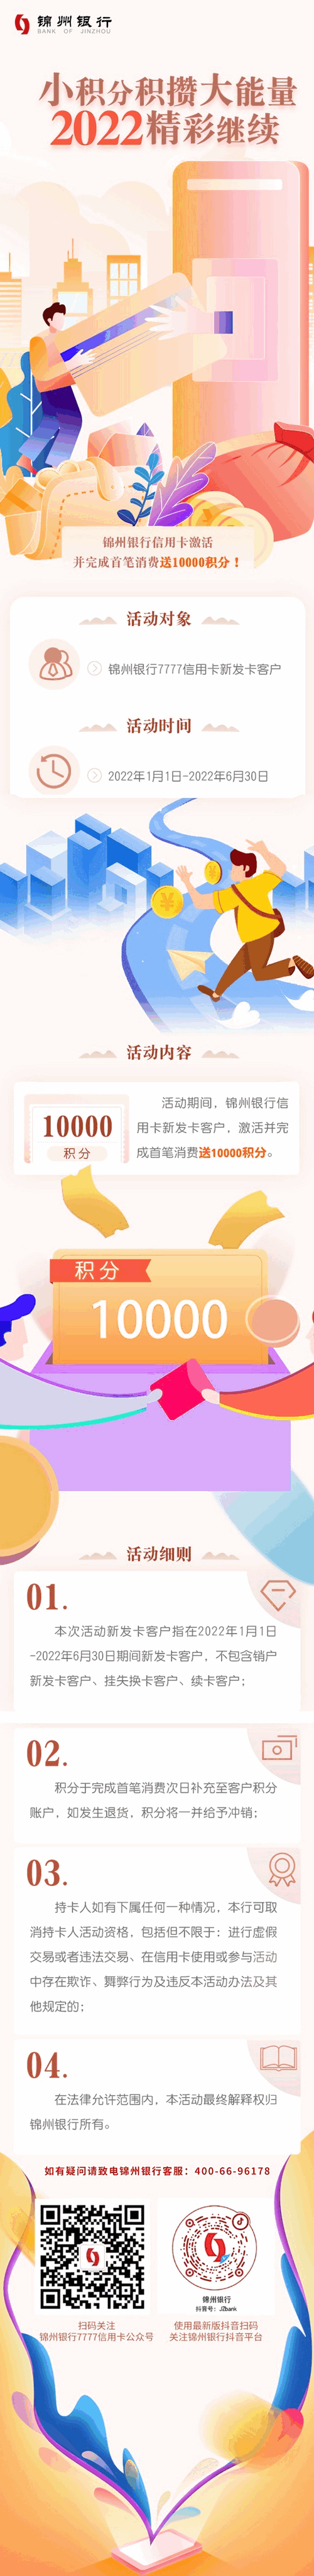 锦州银行信用卡激活并完成首笔消费送1万积分活动